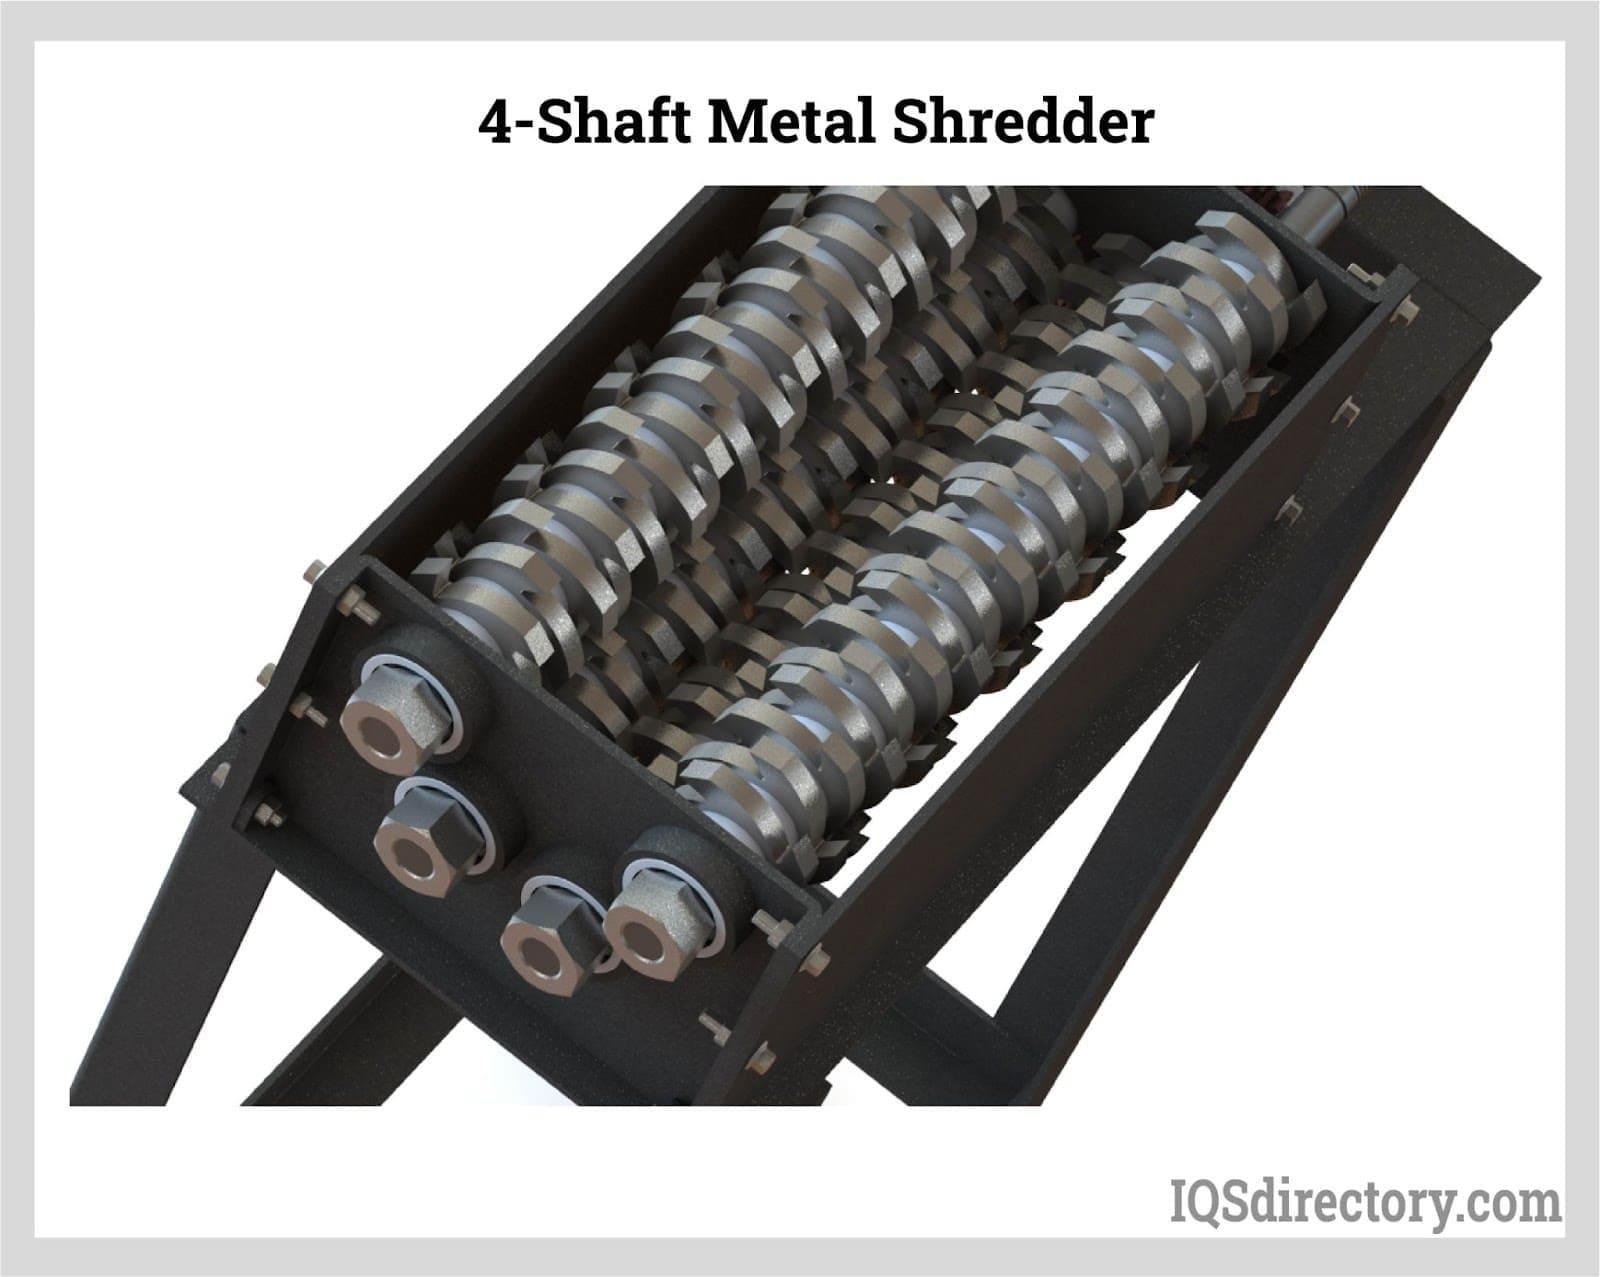 https://www.industrial-shredders.com/wp-content/uploads/2023/01/4-shaft-shredder.jpg